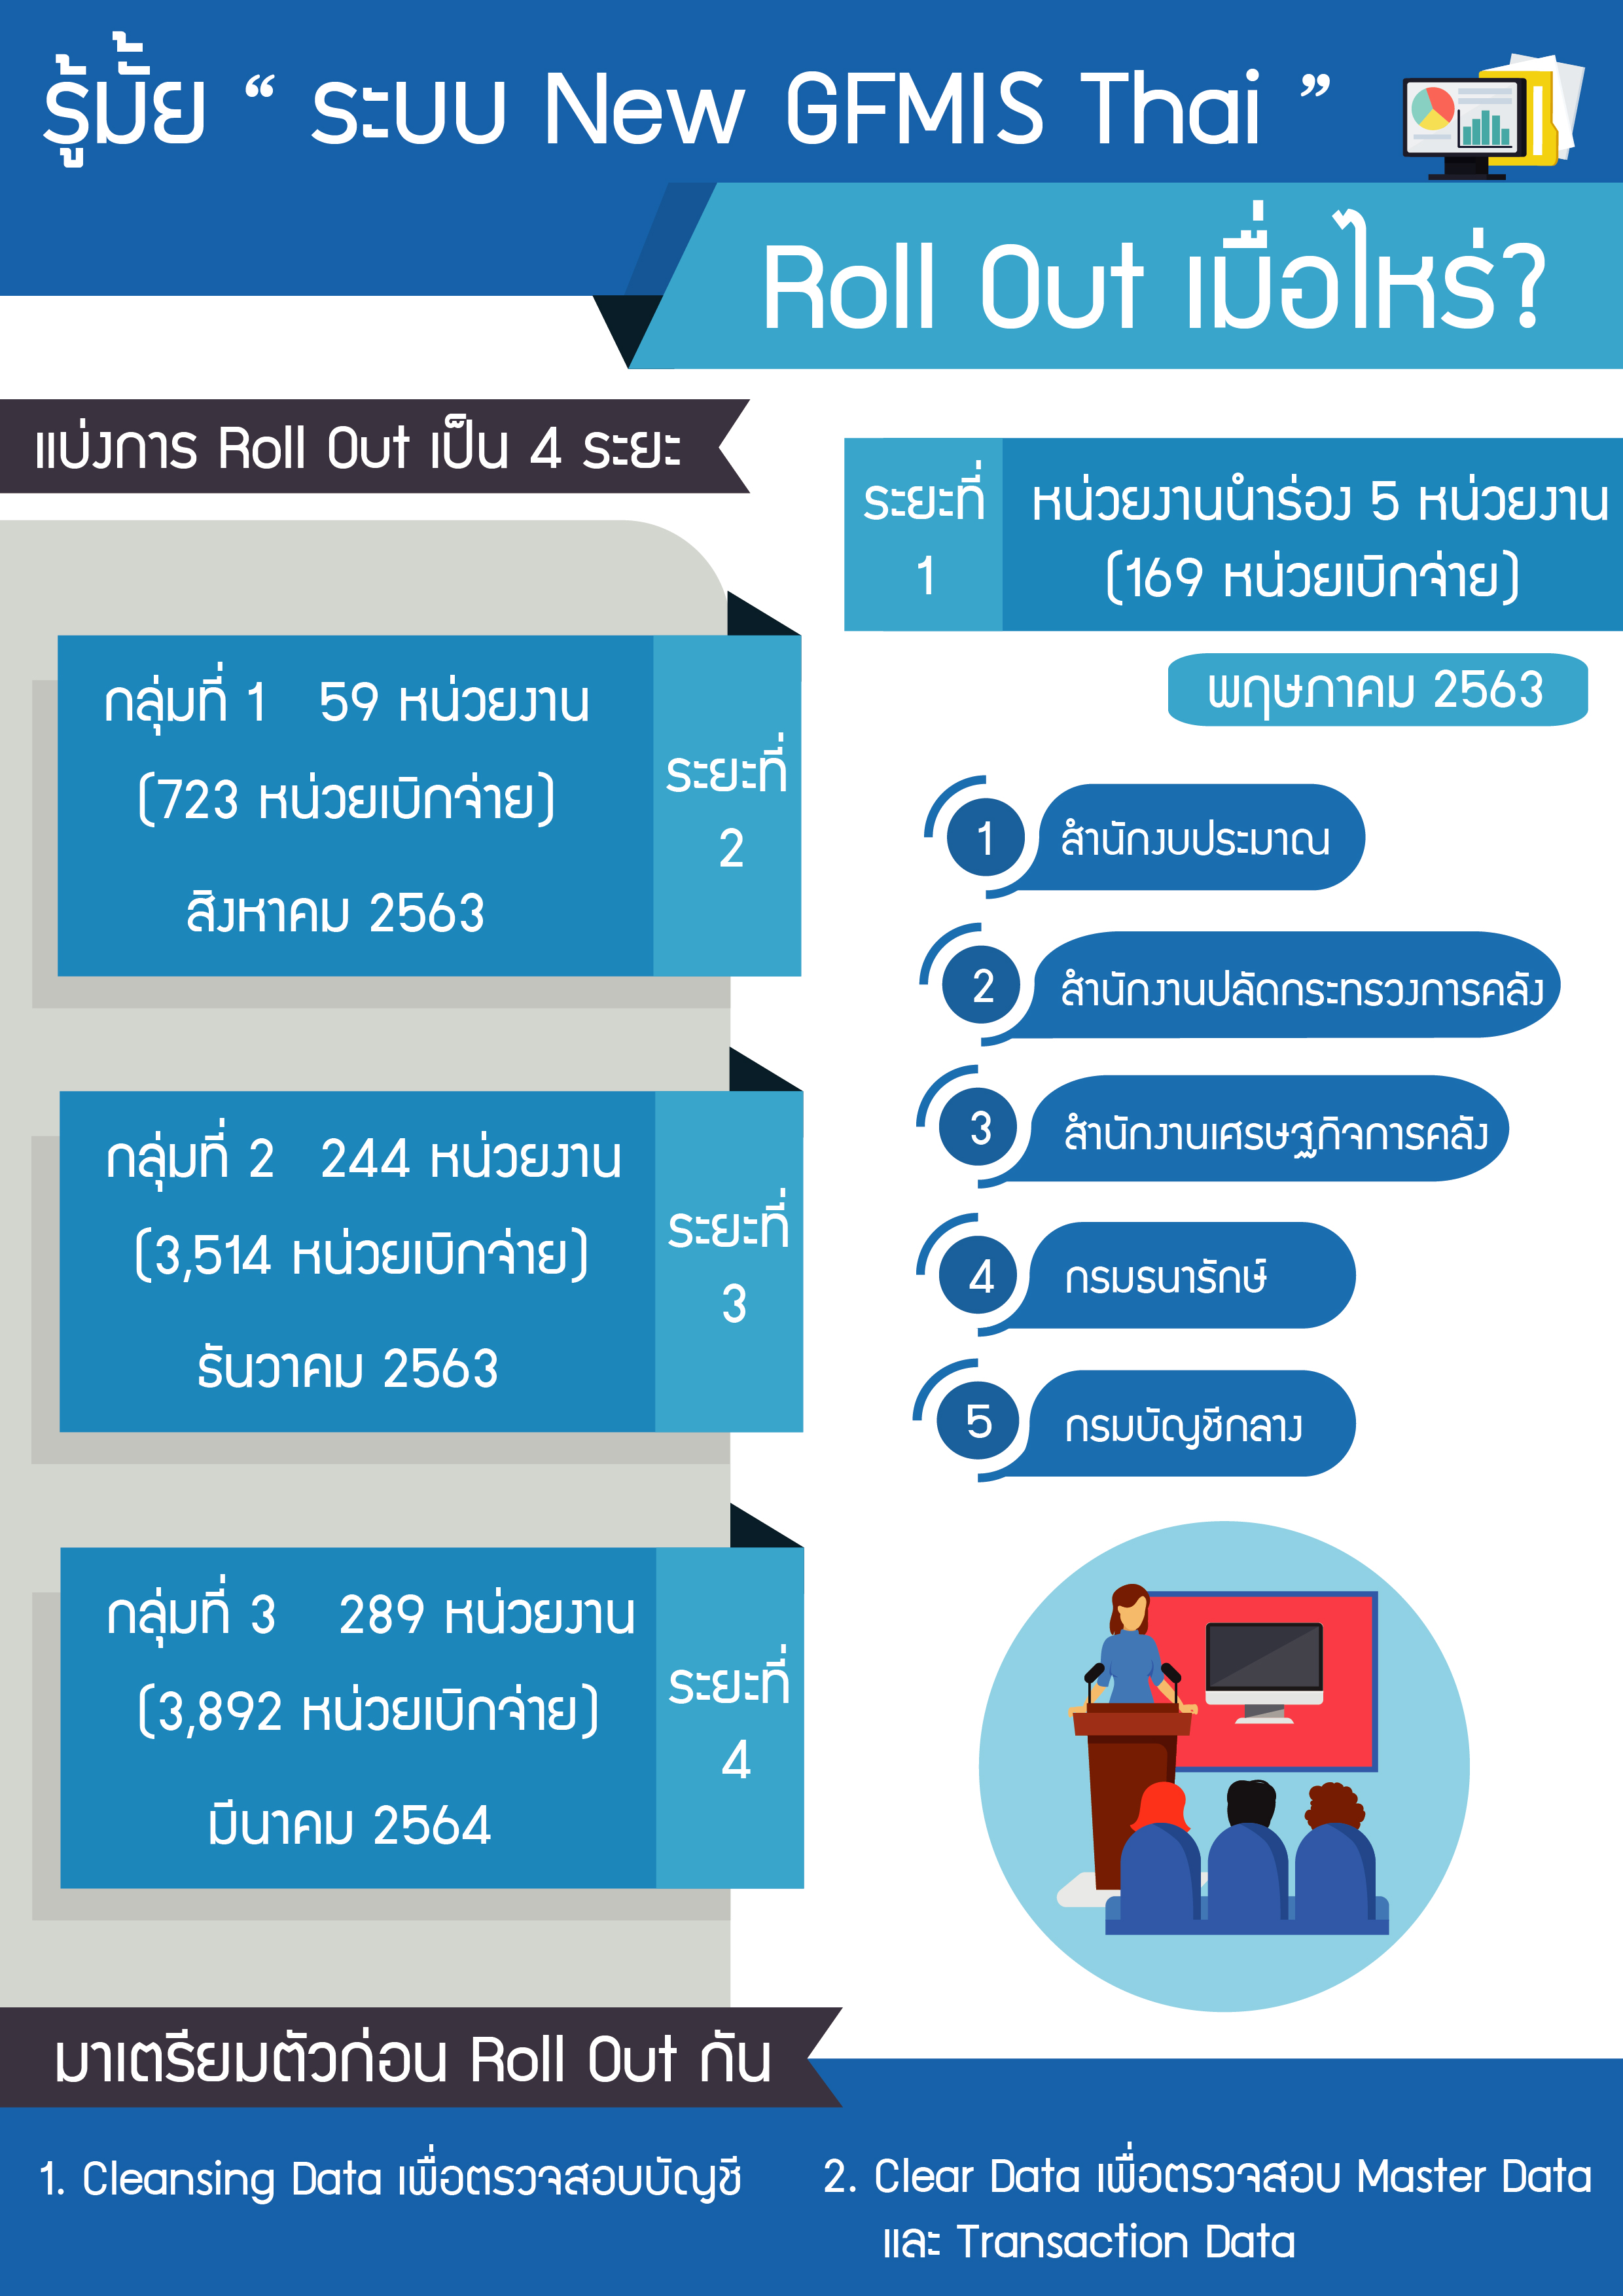 ประกาศเกี่ยวกับการเริ่ม Roll Out ระบบ New GFMIS Thai